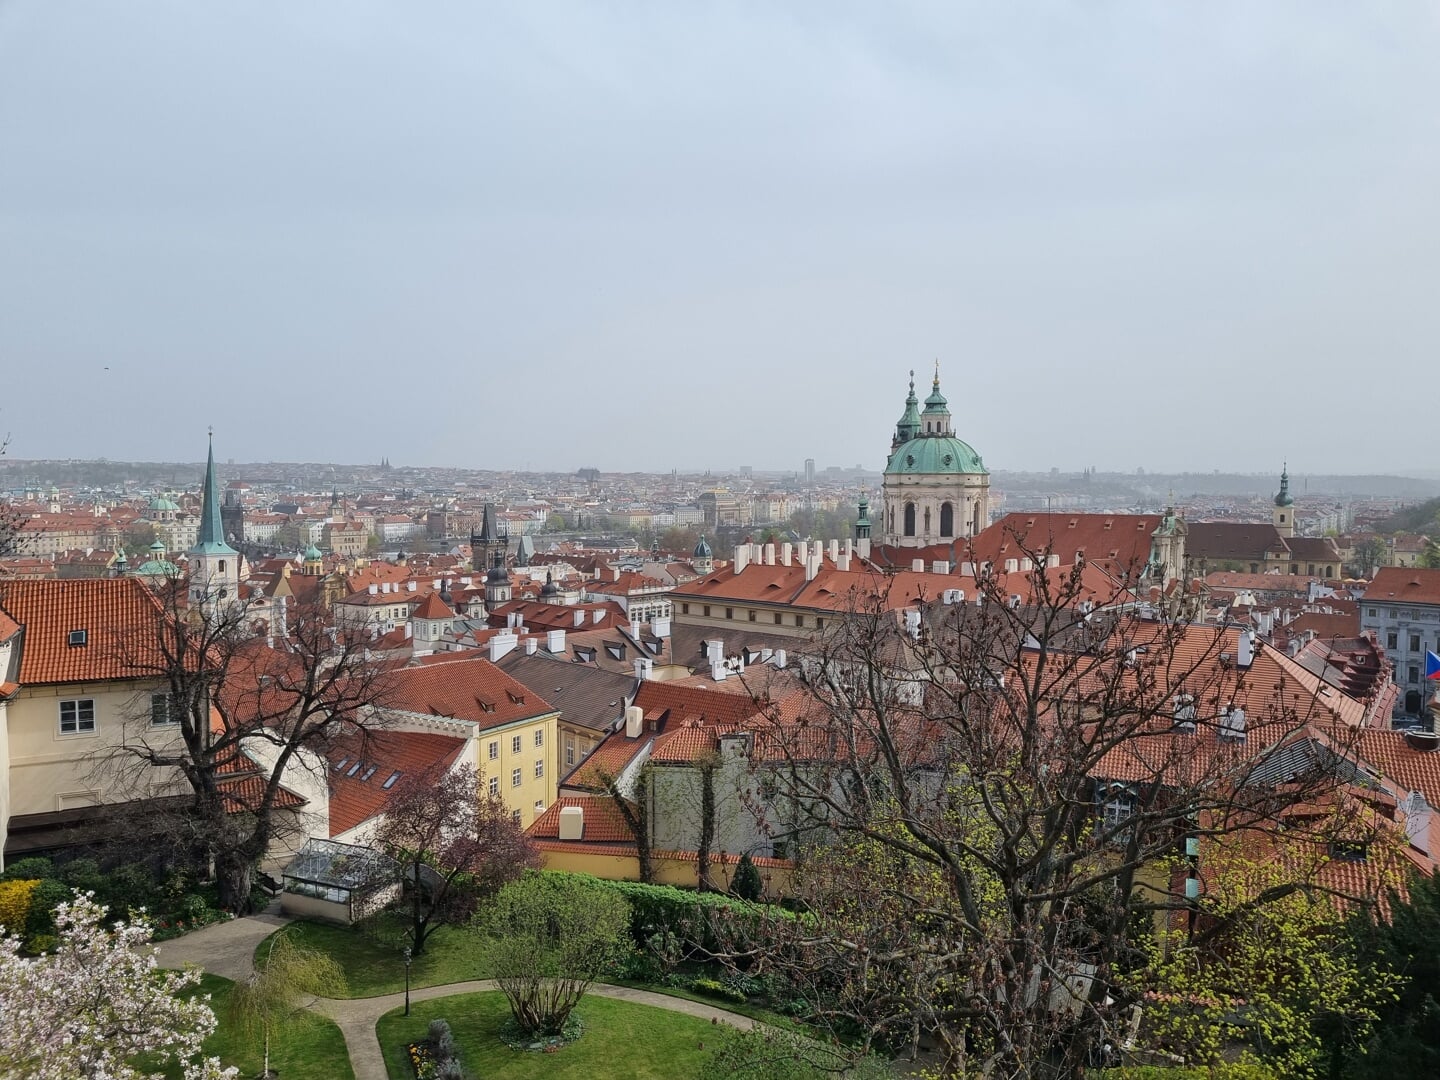 Uitzicht vanaf de burcht over Praag.